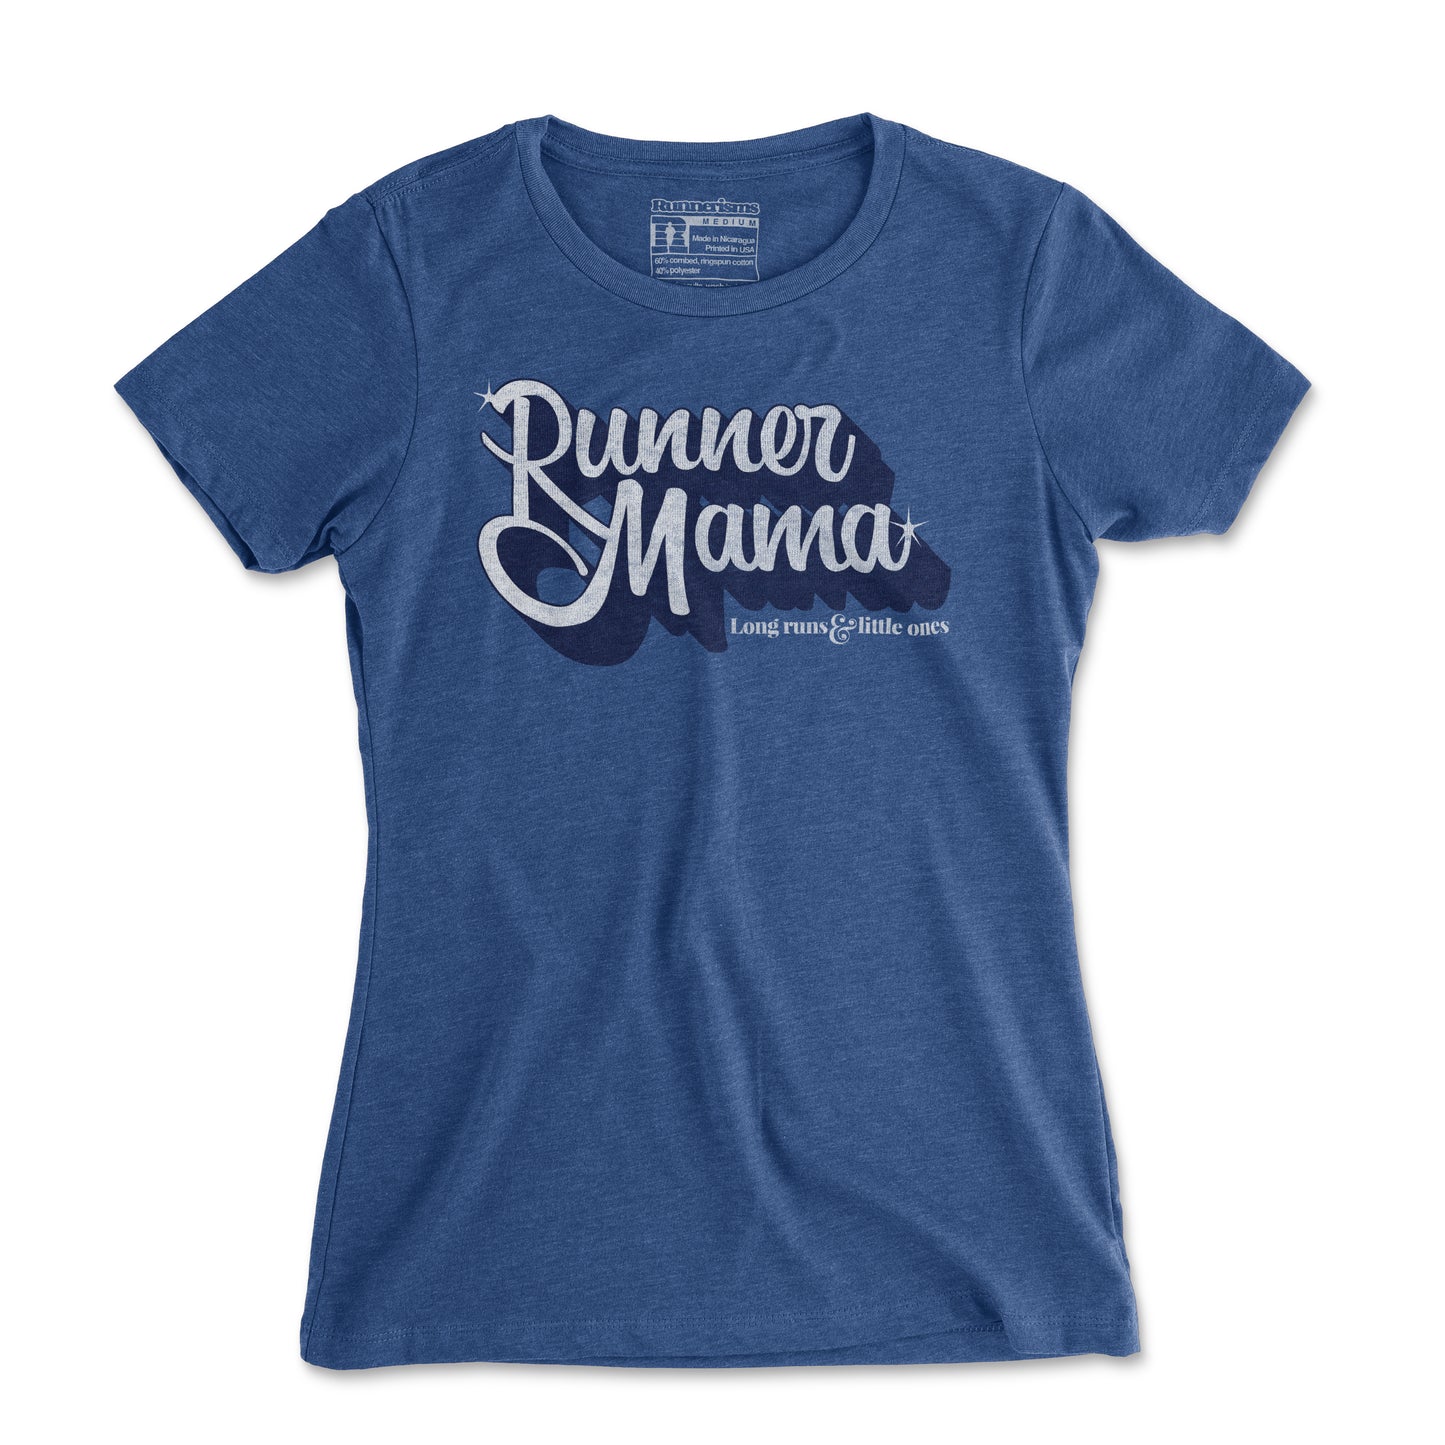 Runner Mama - Women's T Shirt